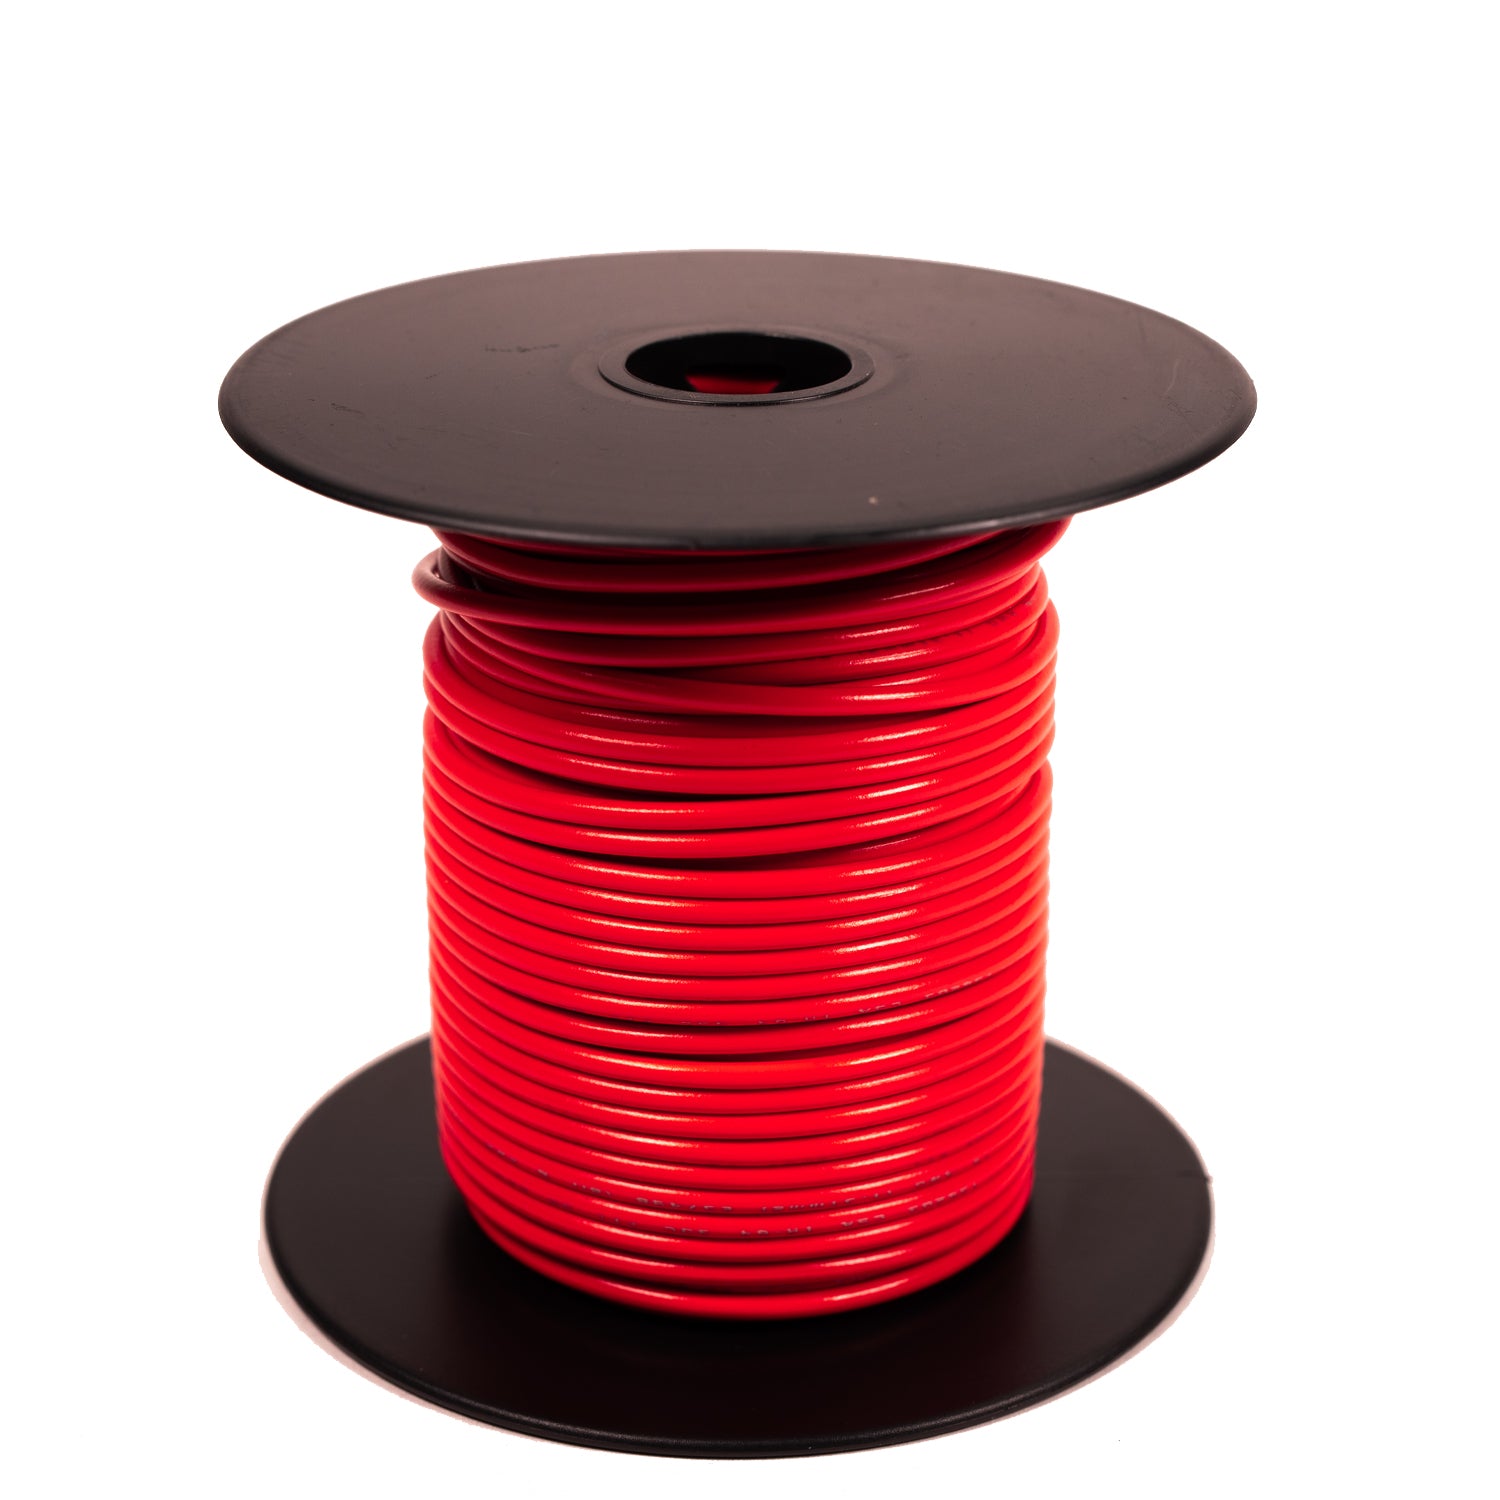 UL1007 300V Stranded Red Wire, 22-16GA